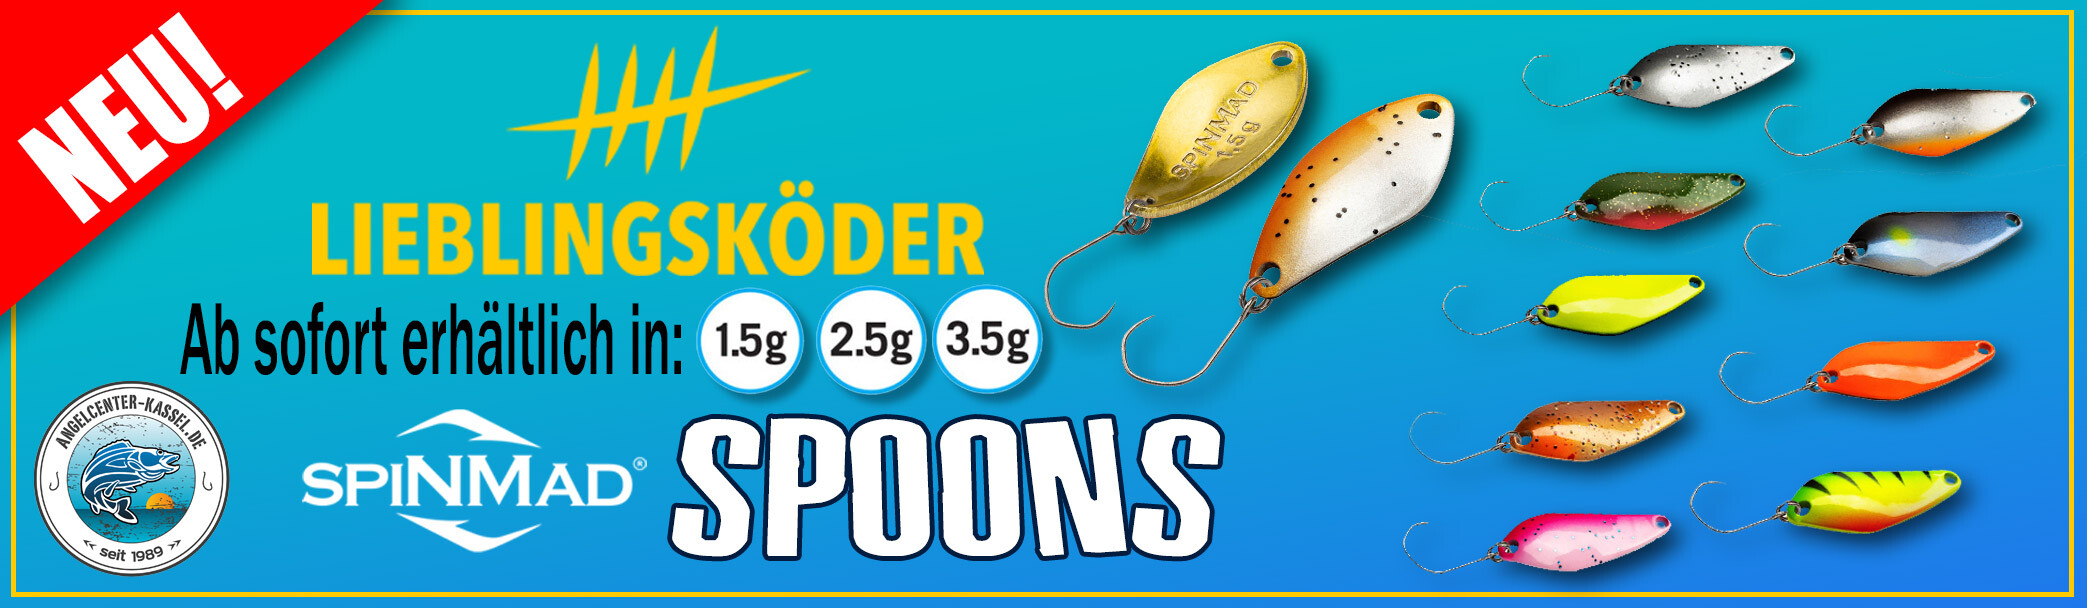 spinmad lieblingsköder spoons